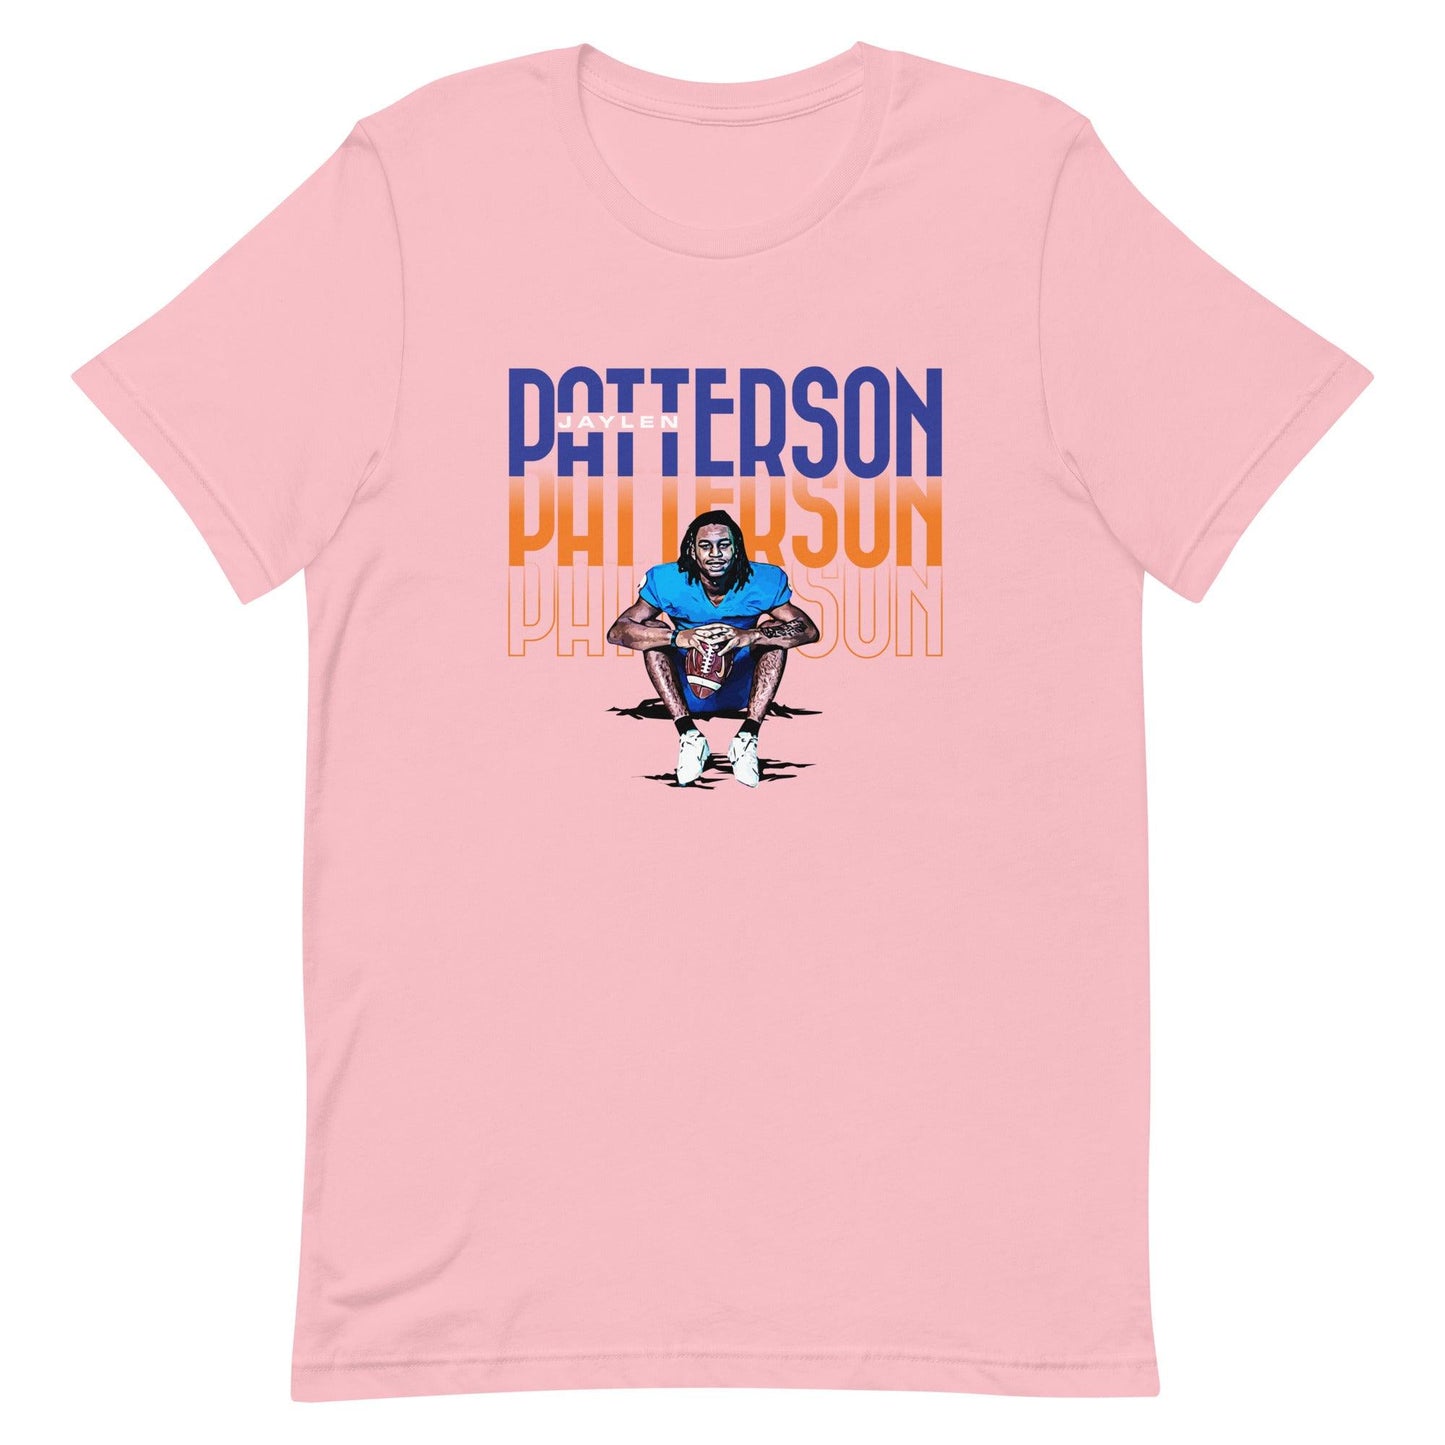 Jaylen Patterson "Gameday" t-shirt - Fan Arch